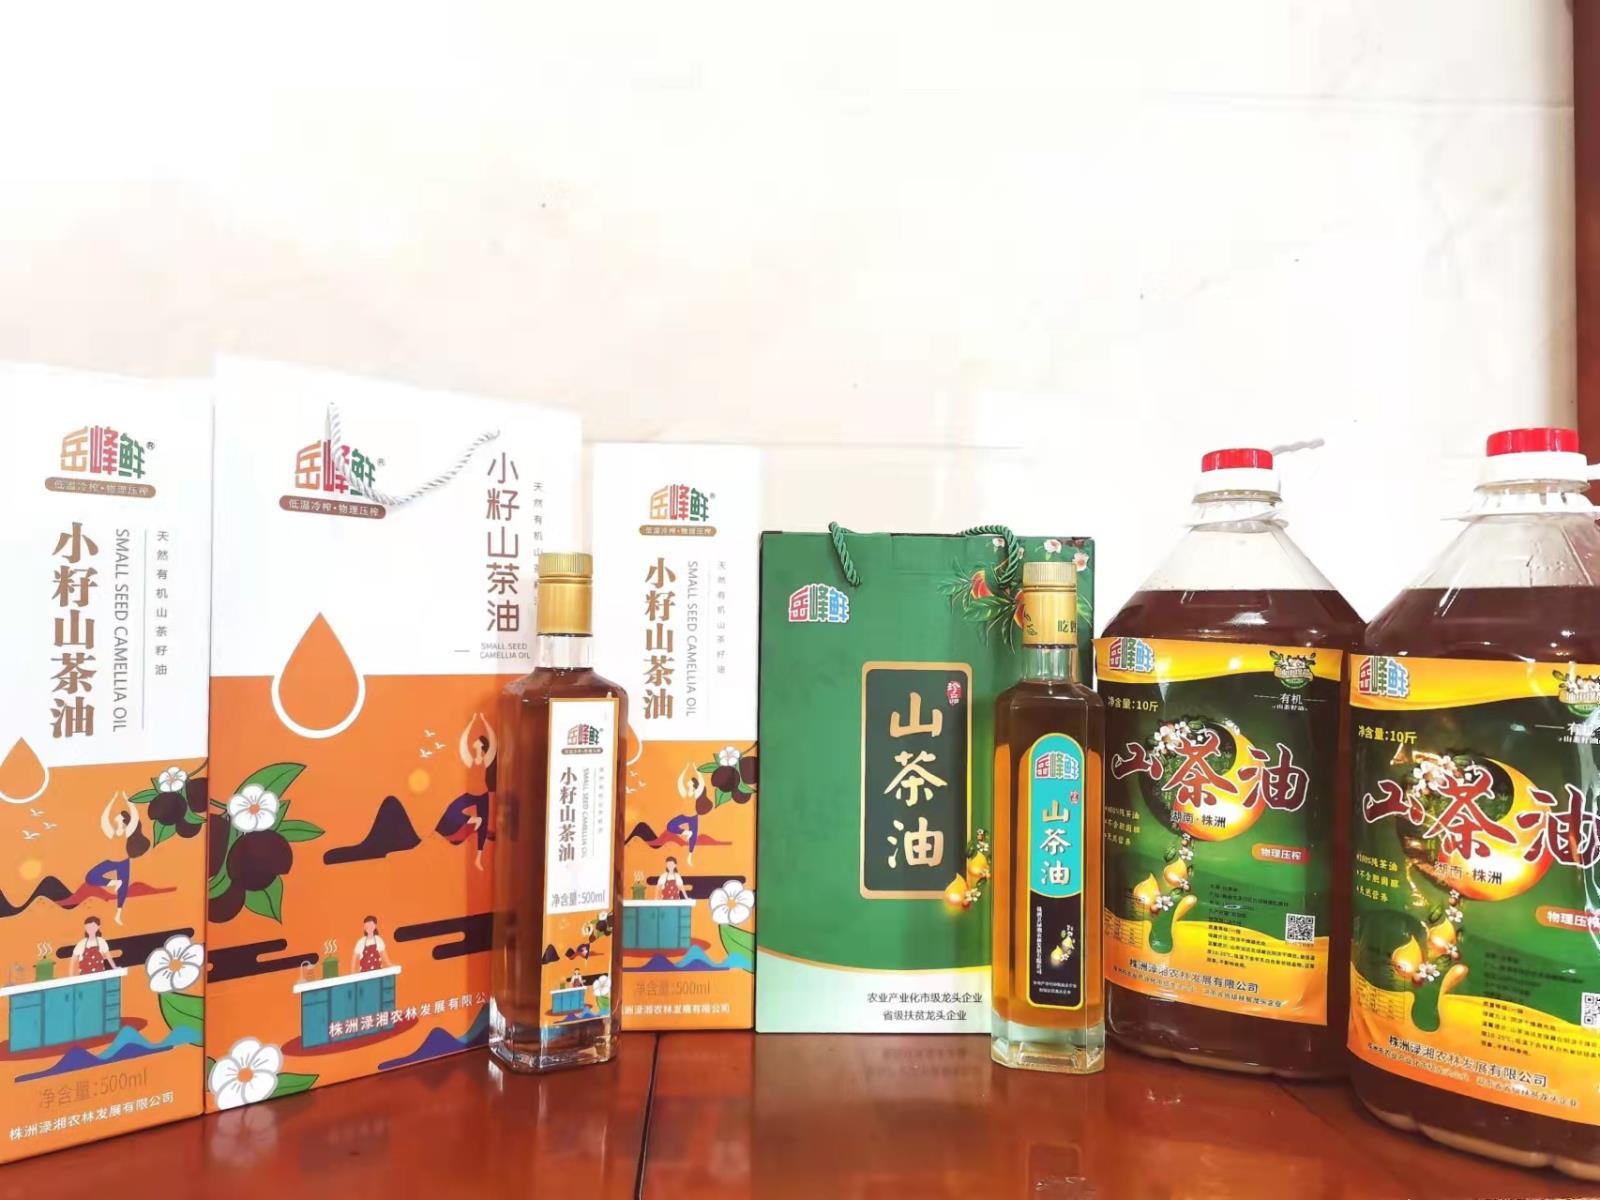 株洲渌湘农林发展有限公司油茶加工厂顺利投产，所产岳峰鲜品牌山茶油12月份正式上市啦！